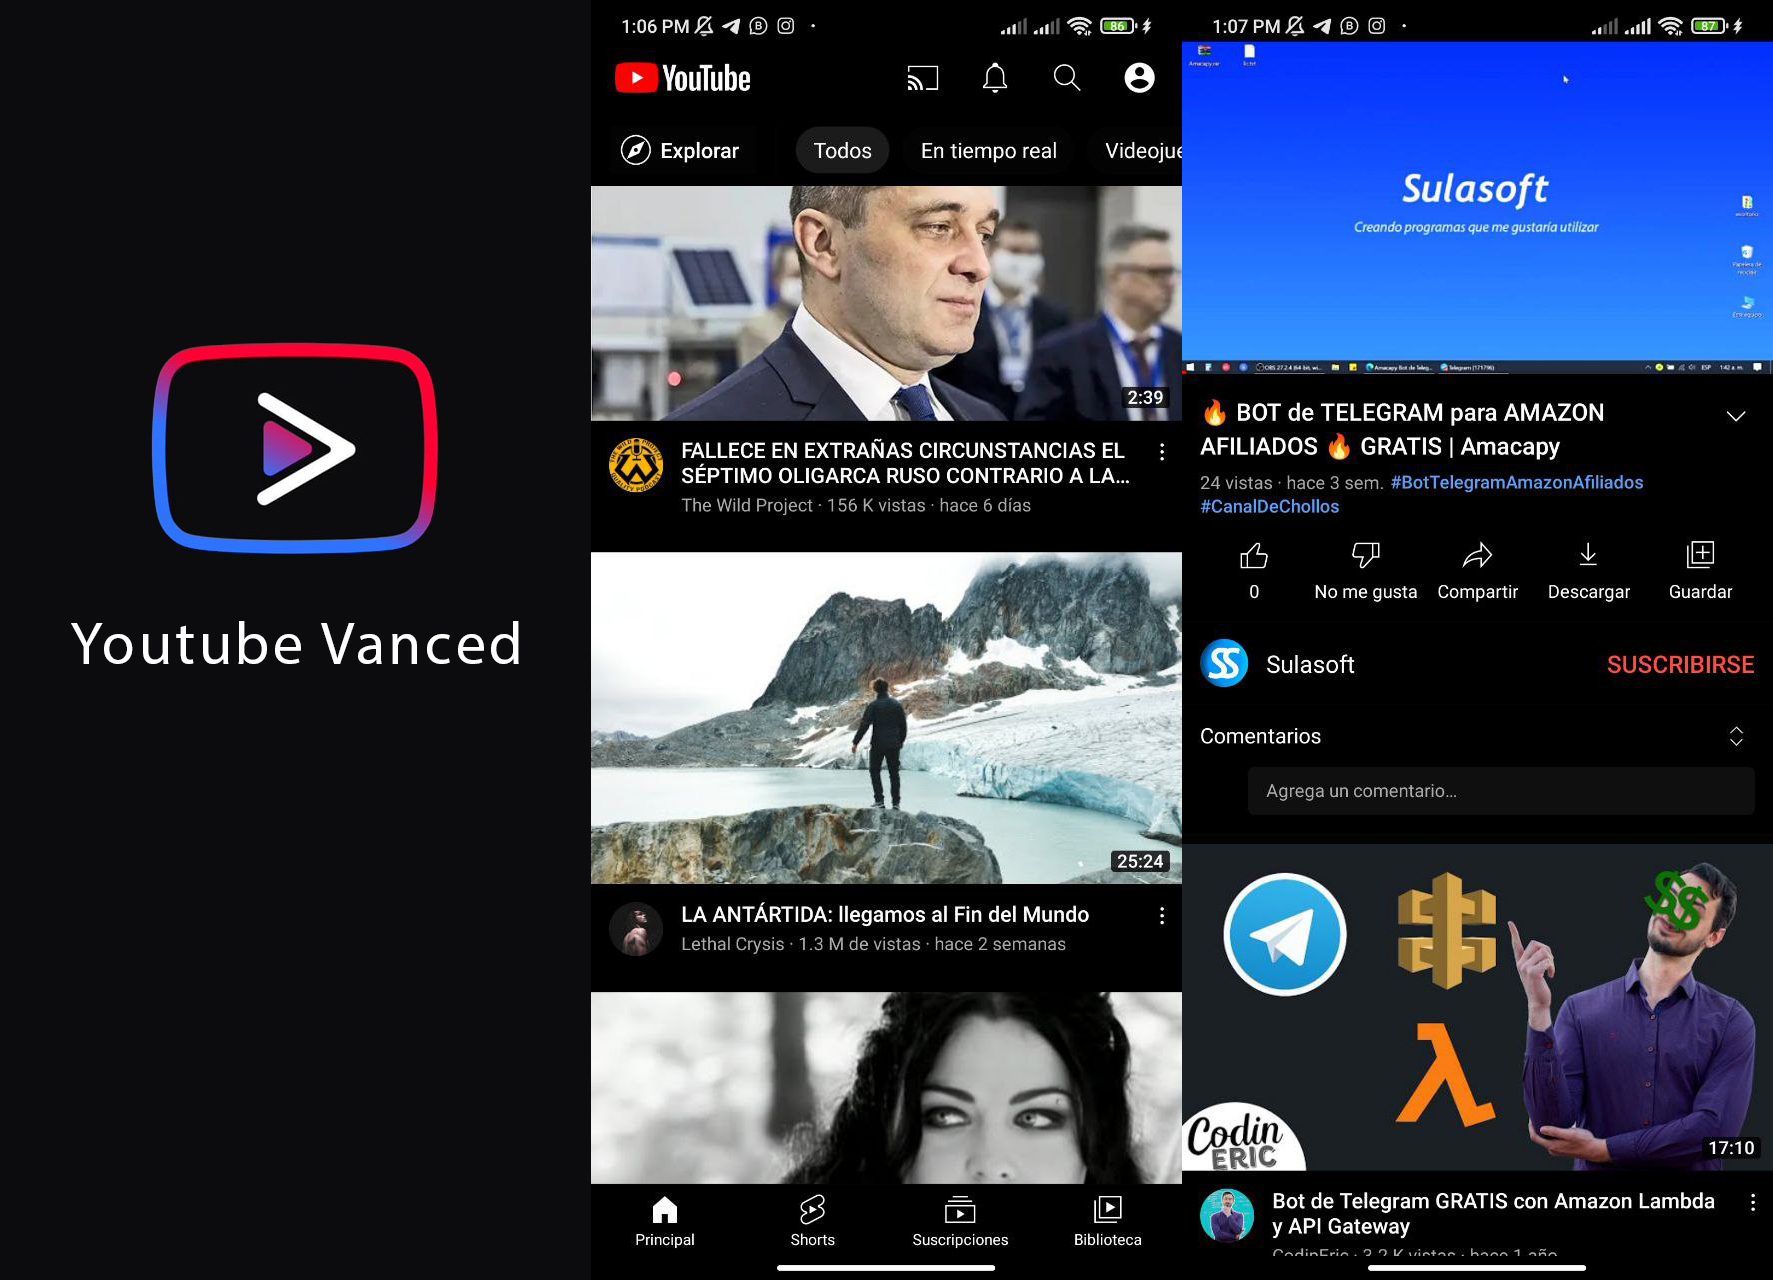 Youtube Vanced permite ver videos sin anuncios y con pantalla apagada